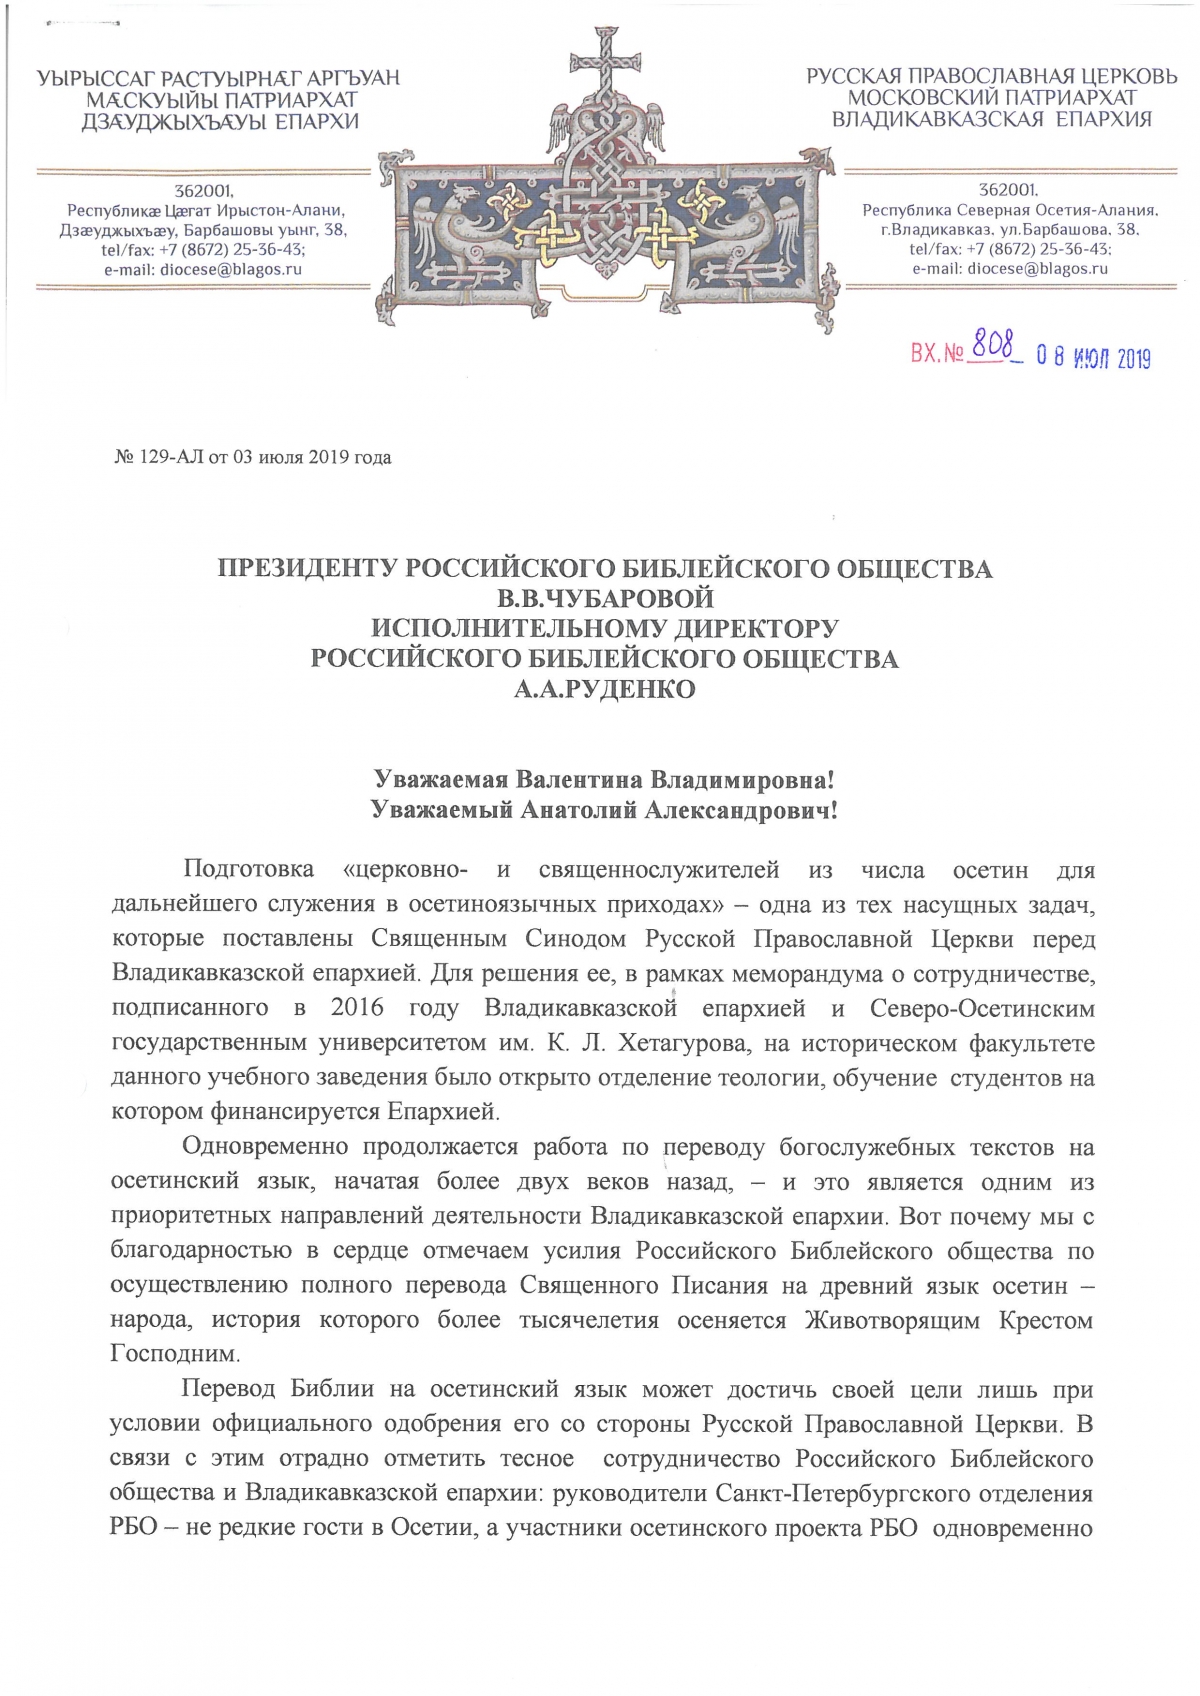 Письмо Архиепископа Владикавказского.jpg